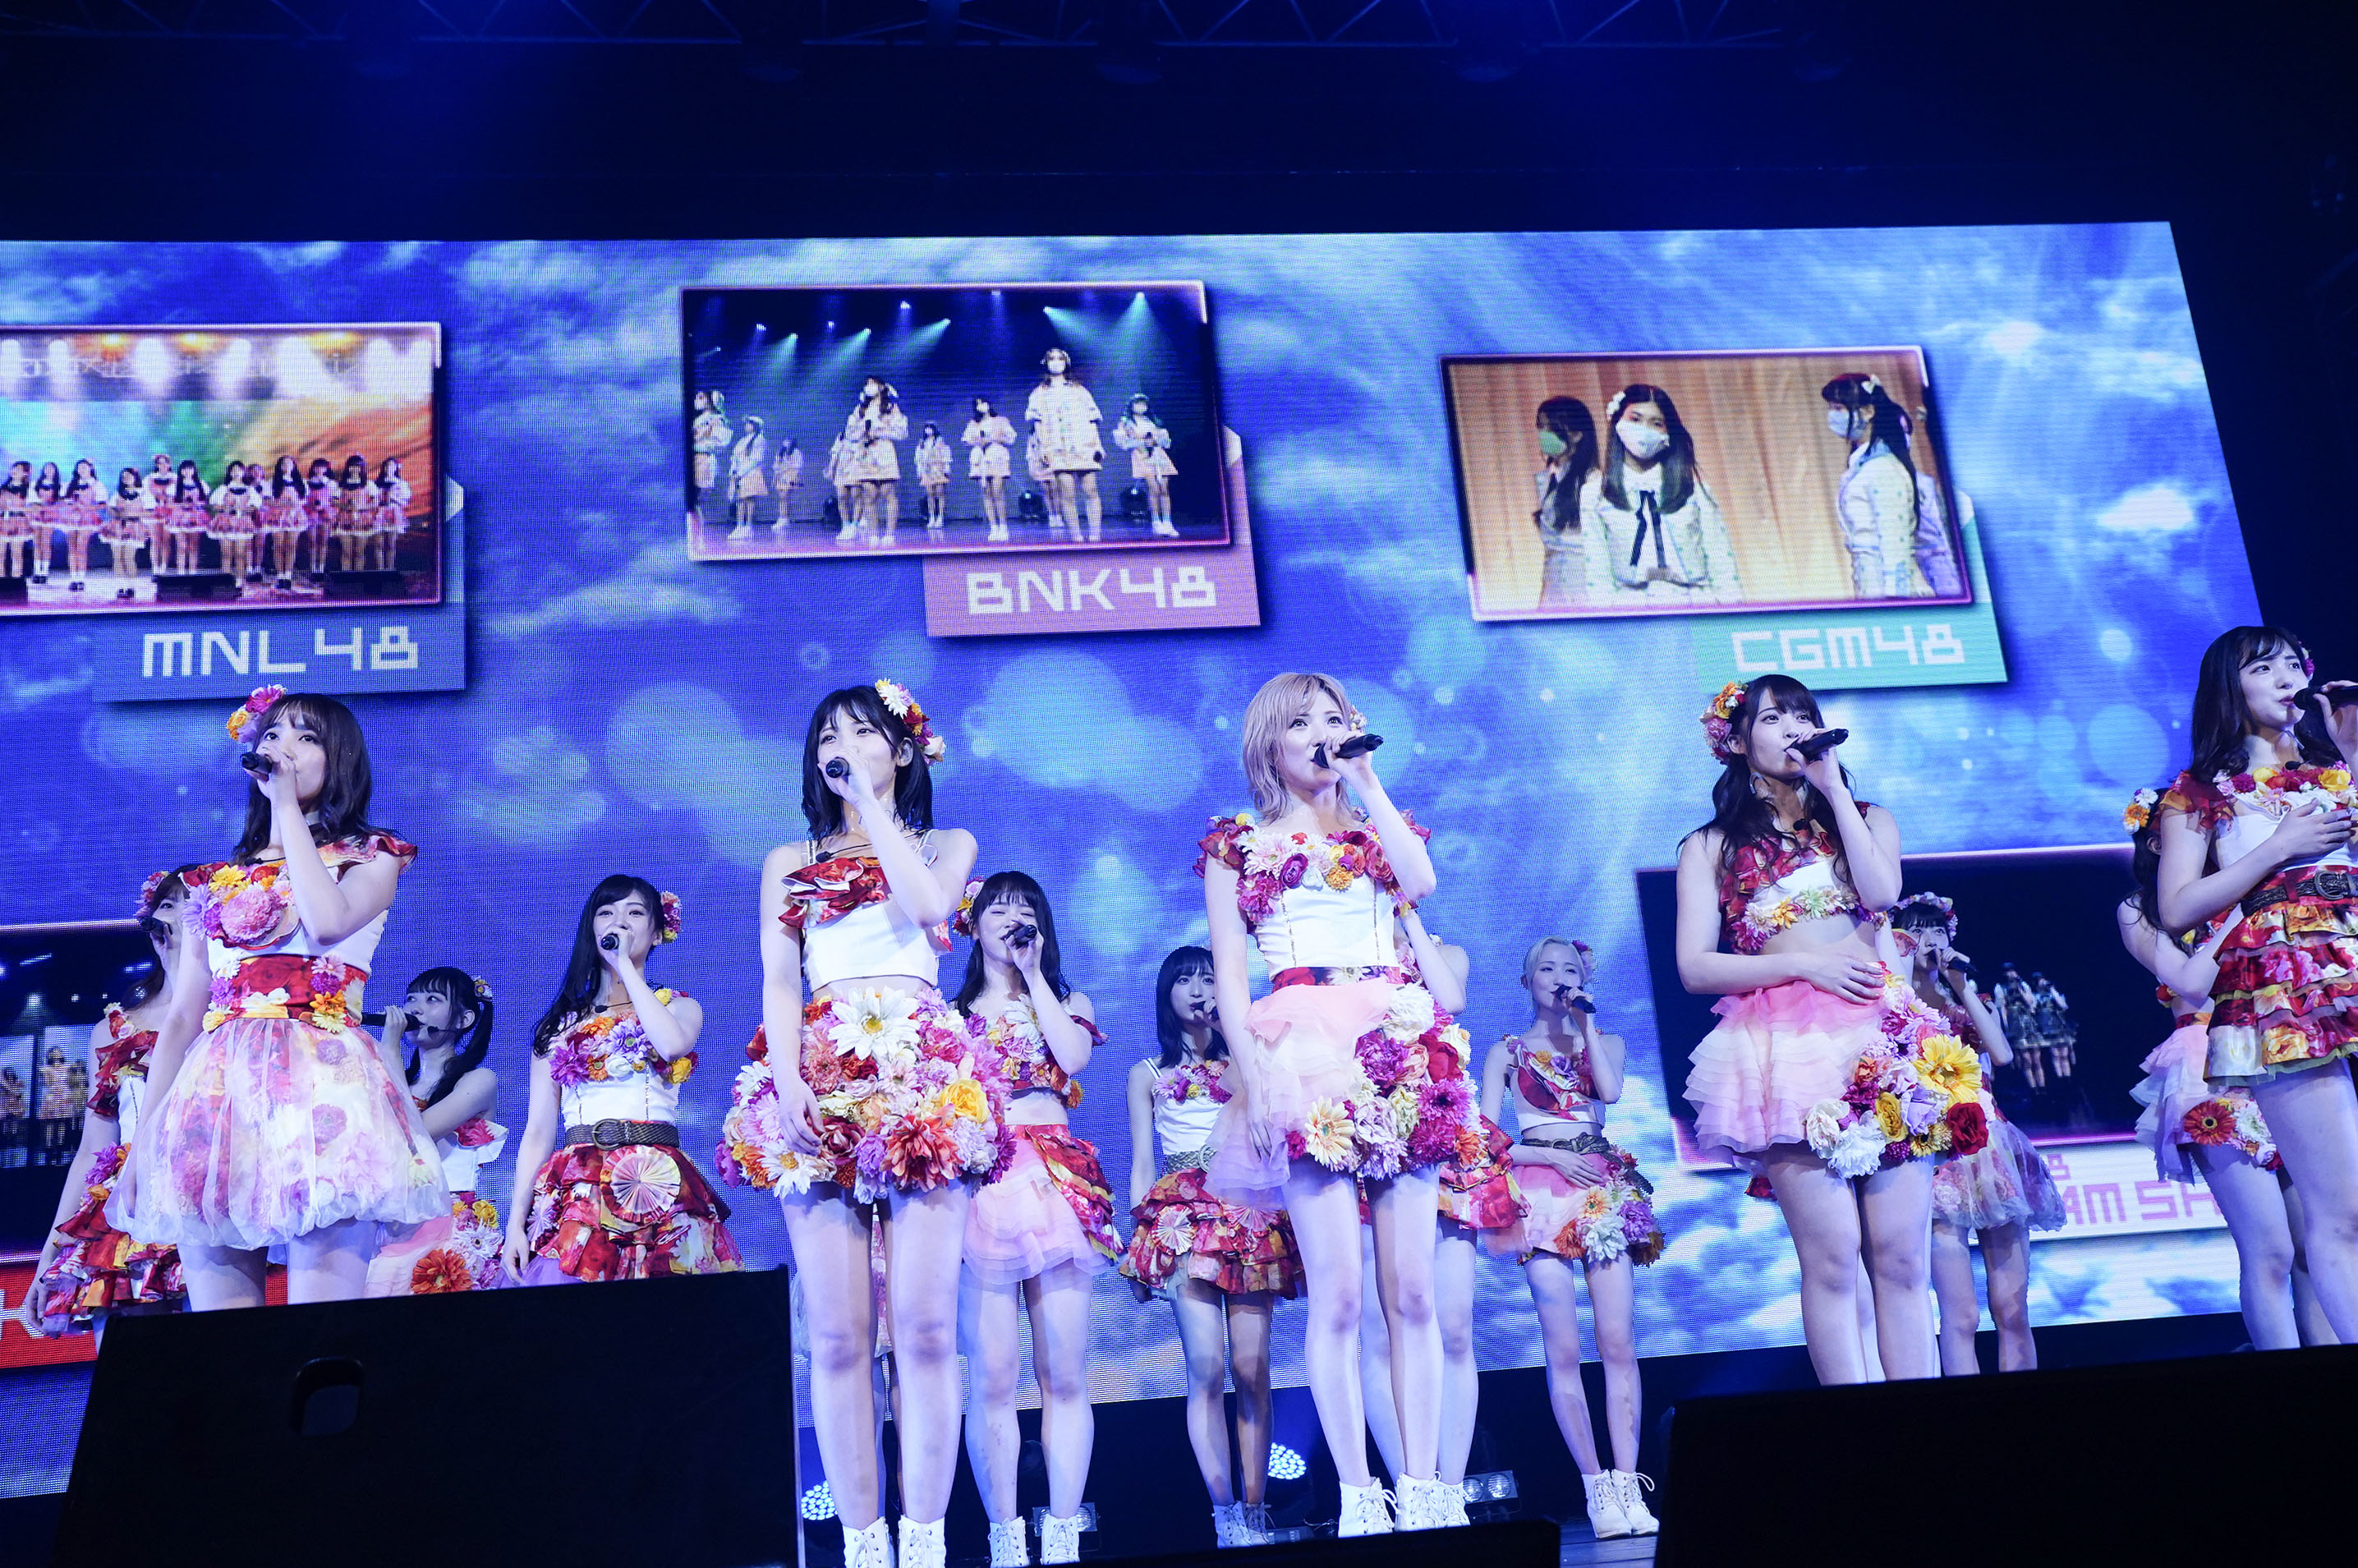 SGO48 xin lỗi người hâm mộ vì chưa thể trình diễn “Original song” trong AKB48 Asia Festival 2021